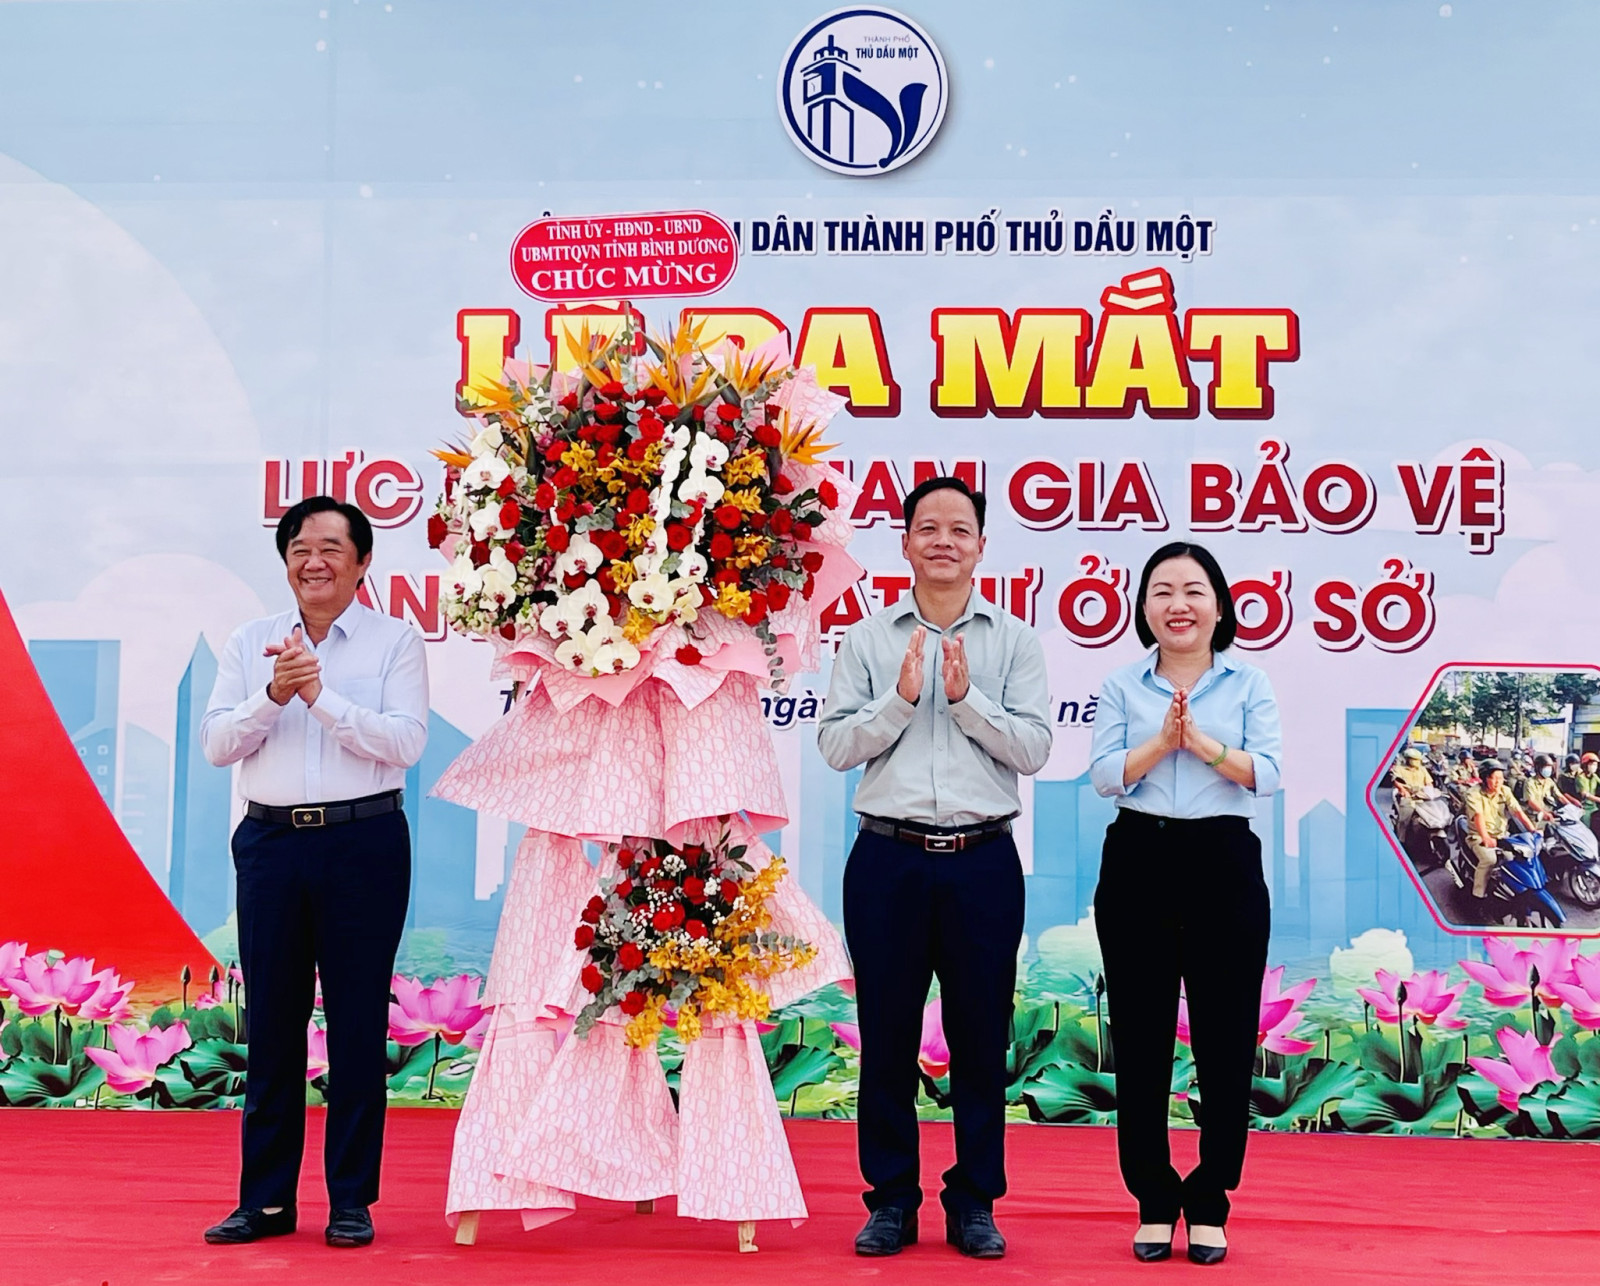 Đồng chí Nguyễn Hoàng Thao tặng lẵng hoa chúc mừng TP. Thủ Dầu Một tại lễ ra mắt.